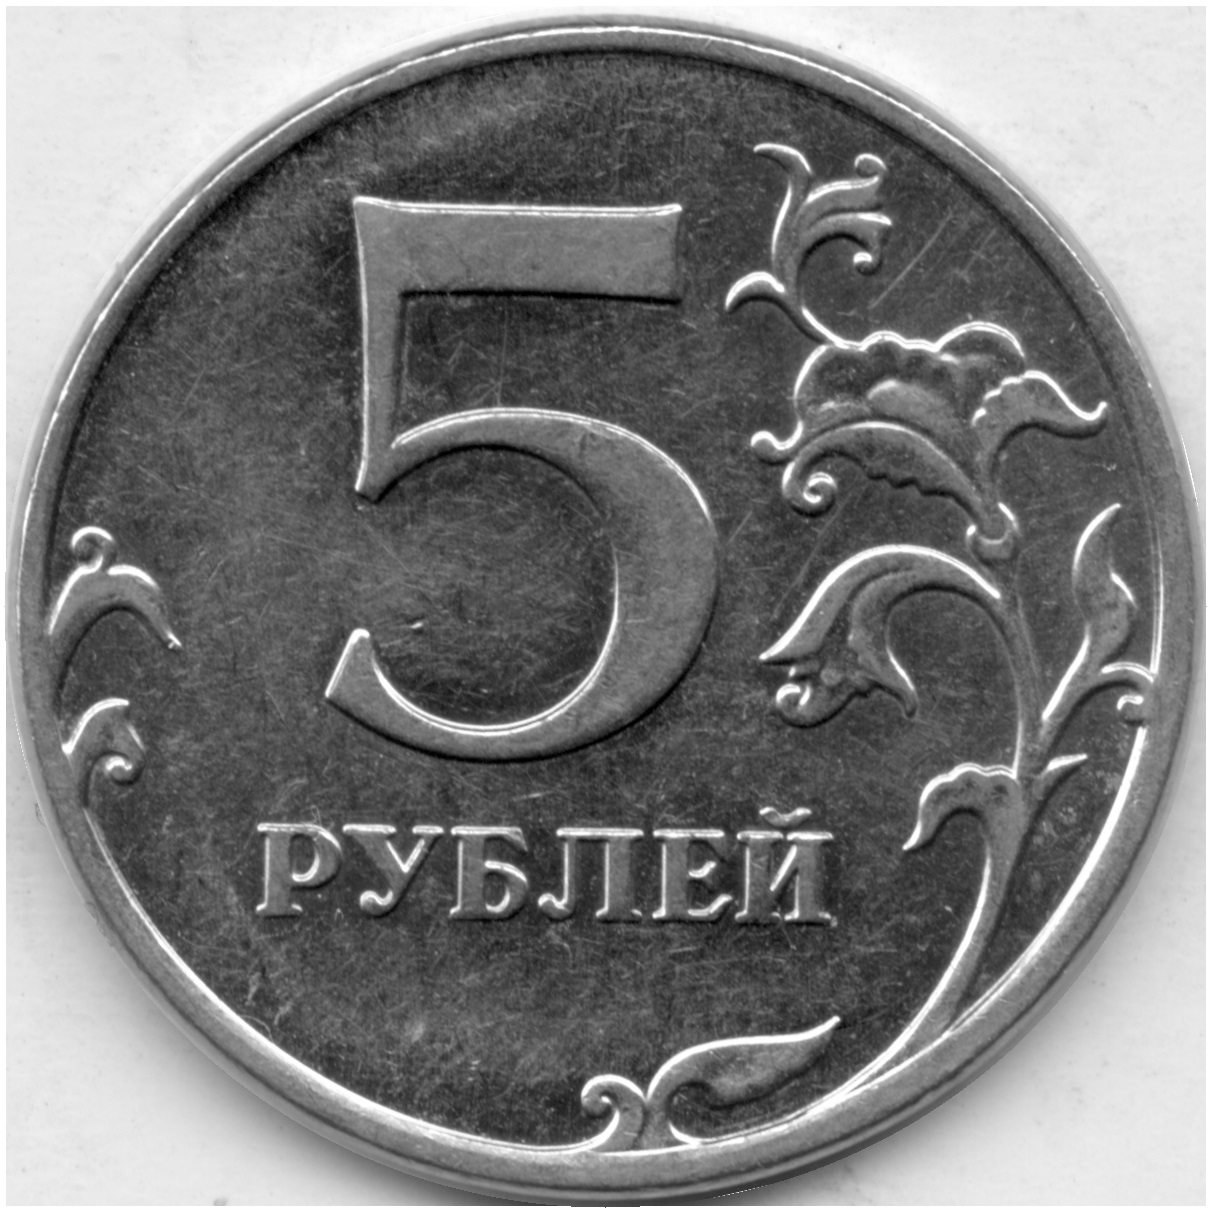 5 рублей стороны. 5 Рублей 2012 ММД. 5 Рублей. 5 Рублей 2012 года ММД. 5 Рублей бумажные.